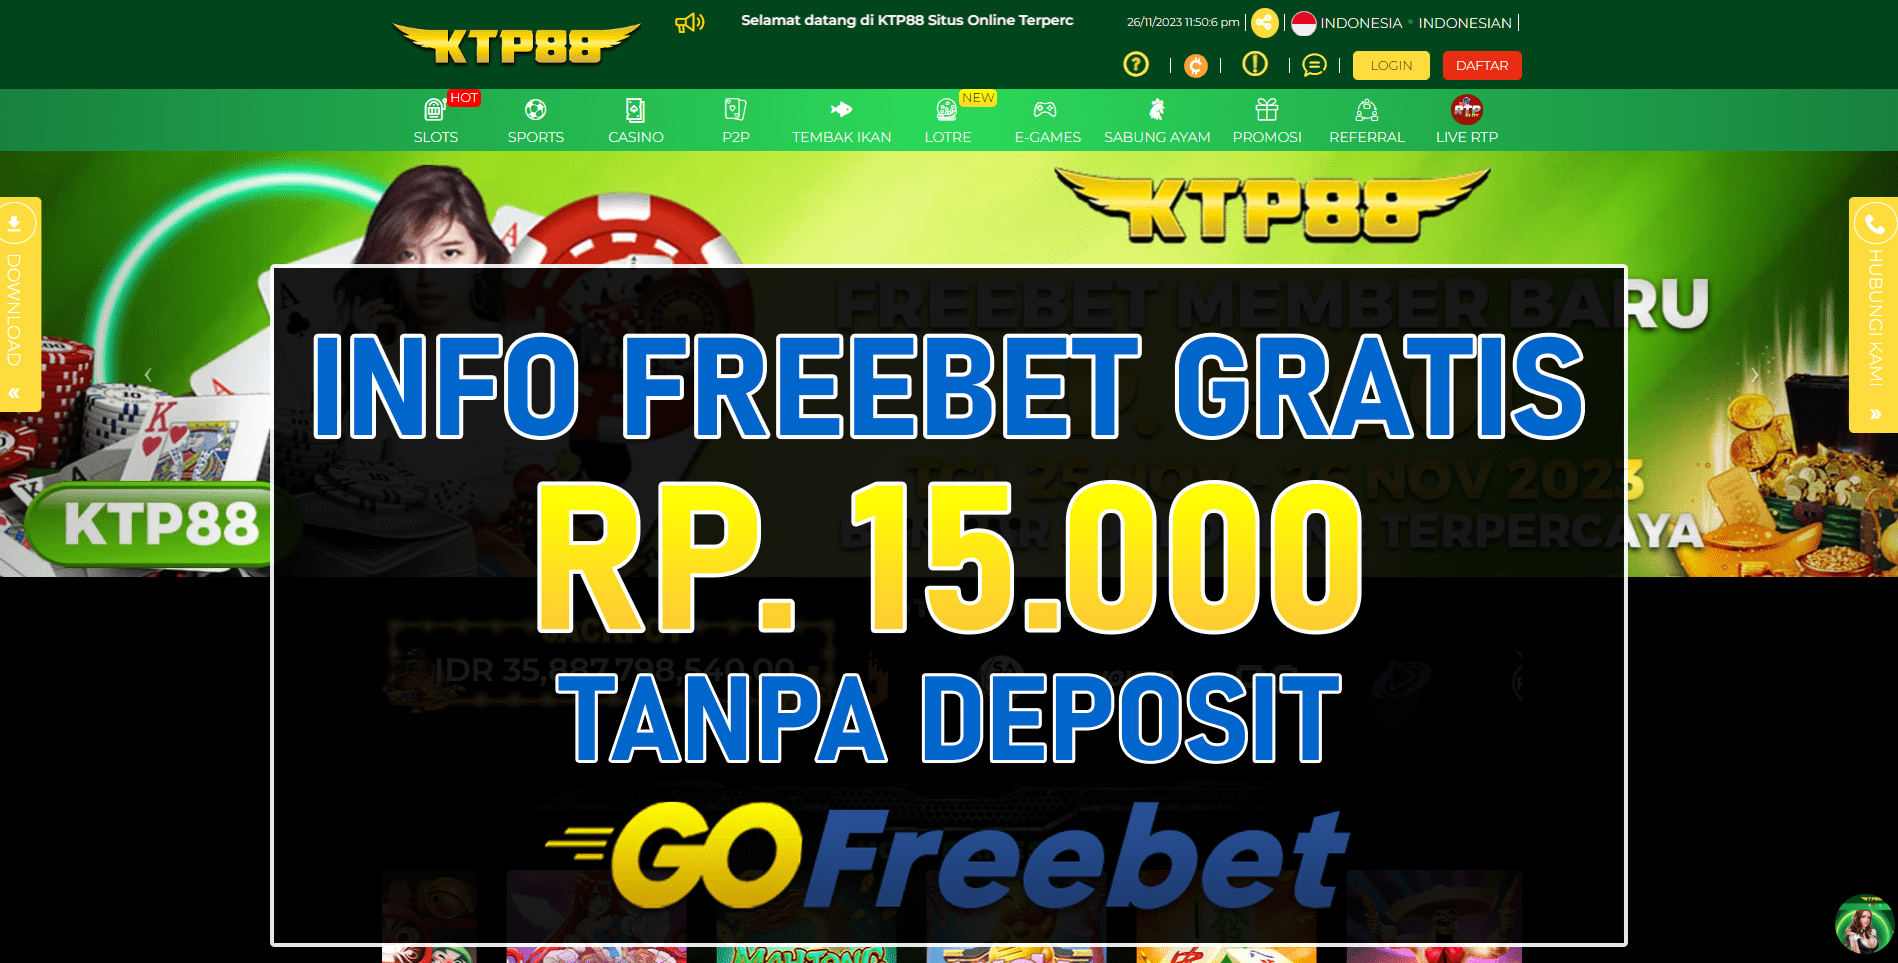 Ktp88 Freebet Gratis Rp 15.000 Tanpa Deposit